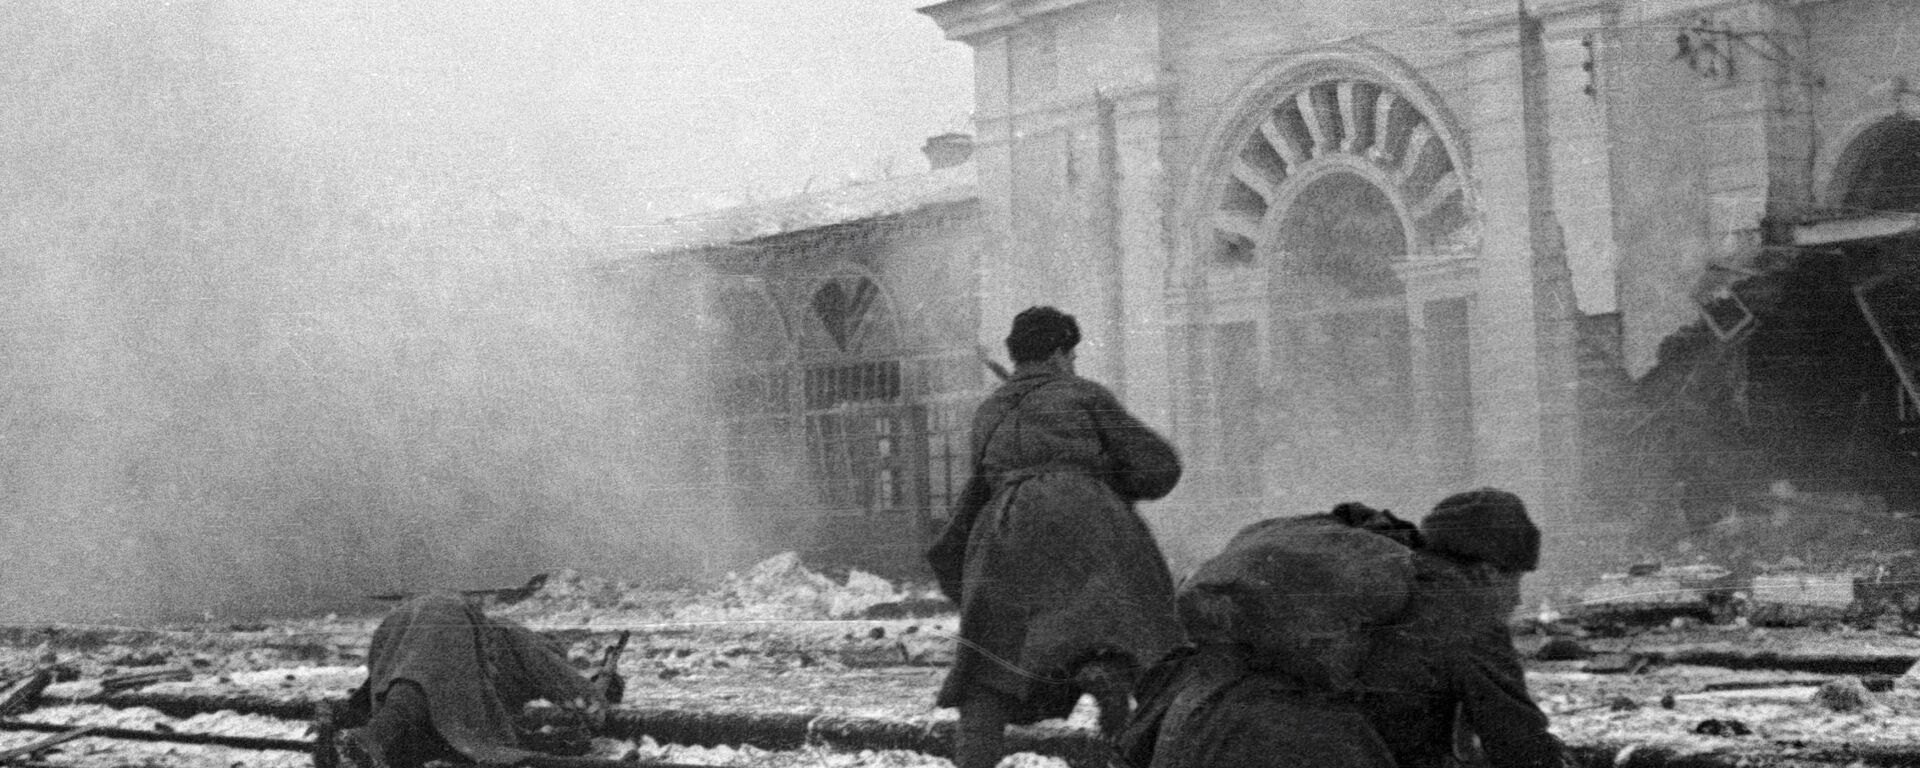 Совјетски војници се боре против немачких окупатора на станици града Ворошиловска (данашњи Ставропољ), Други светски рат. - Sputnik Србија, 1920, 07.05.2020